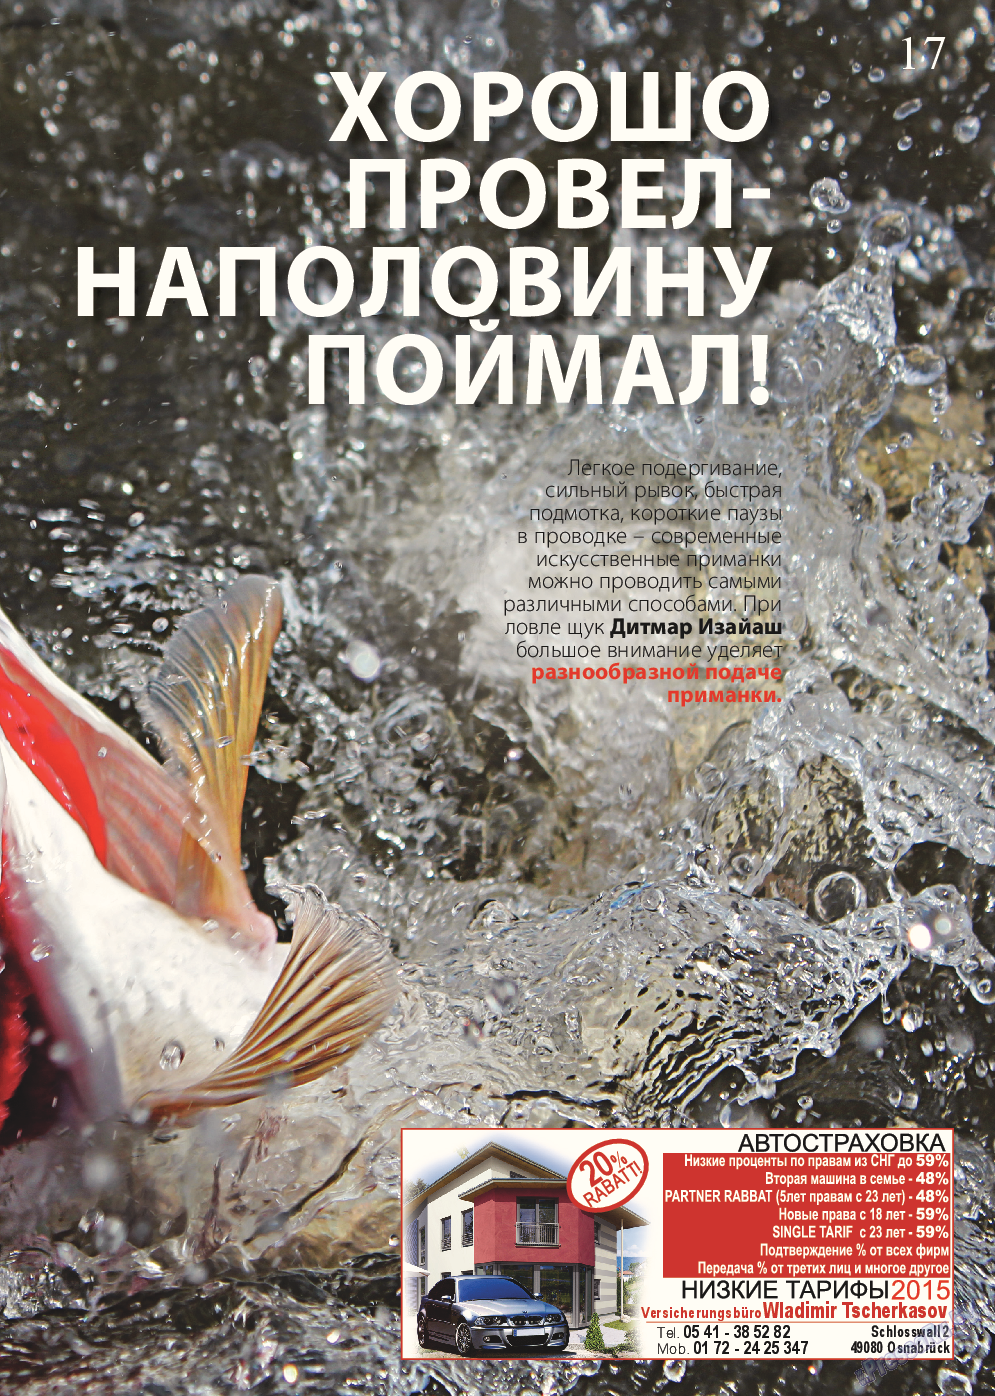 Рыбалка Plus, журнал. 2015 №5 стр.17